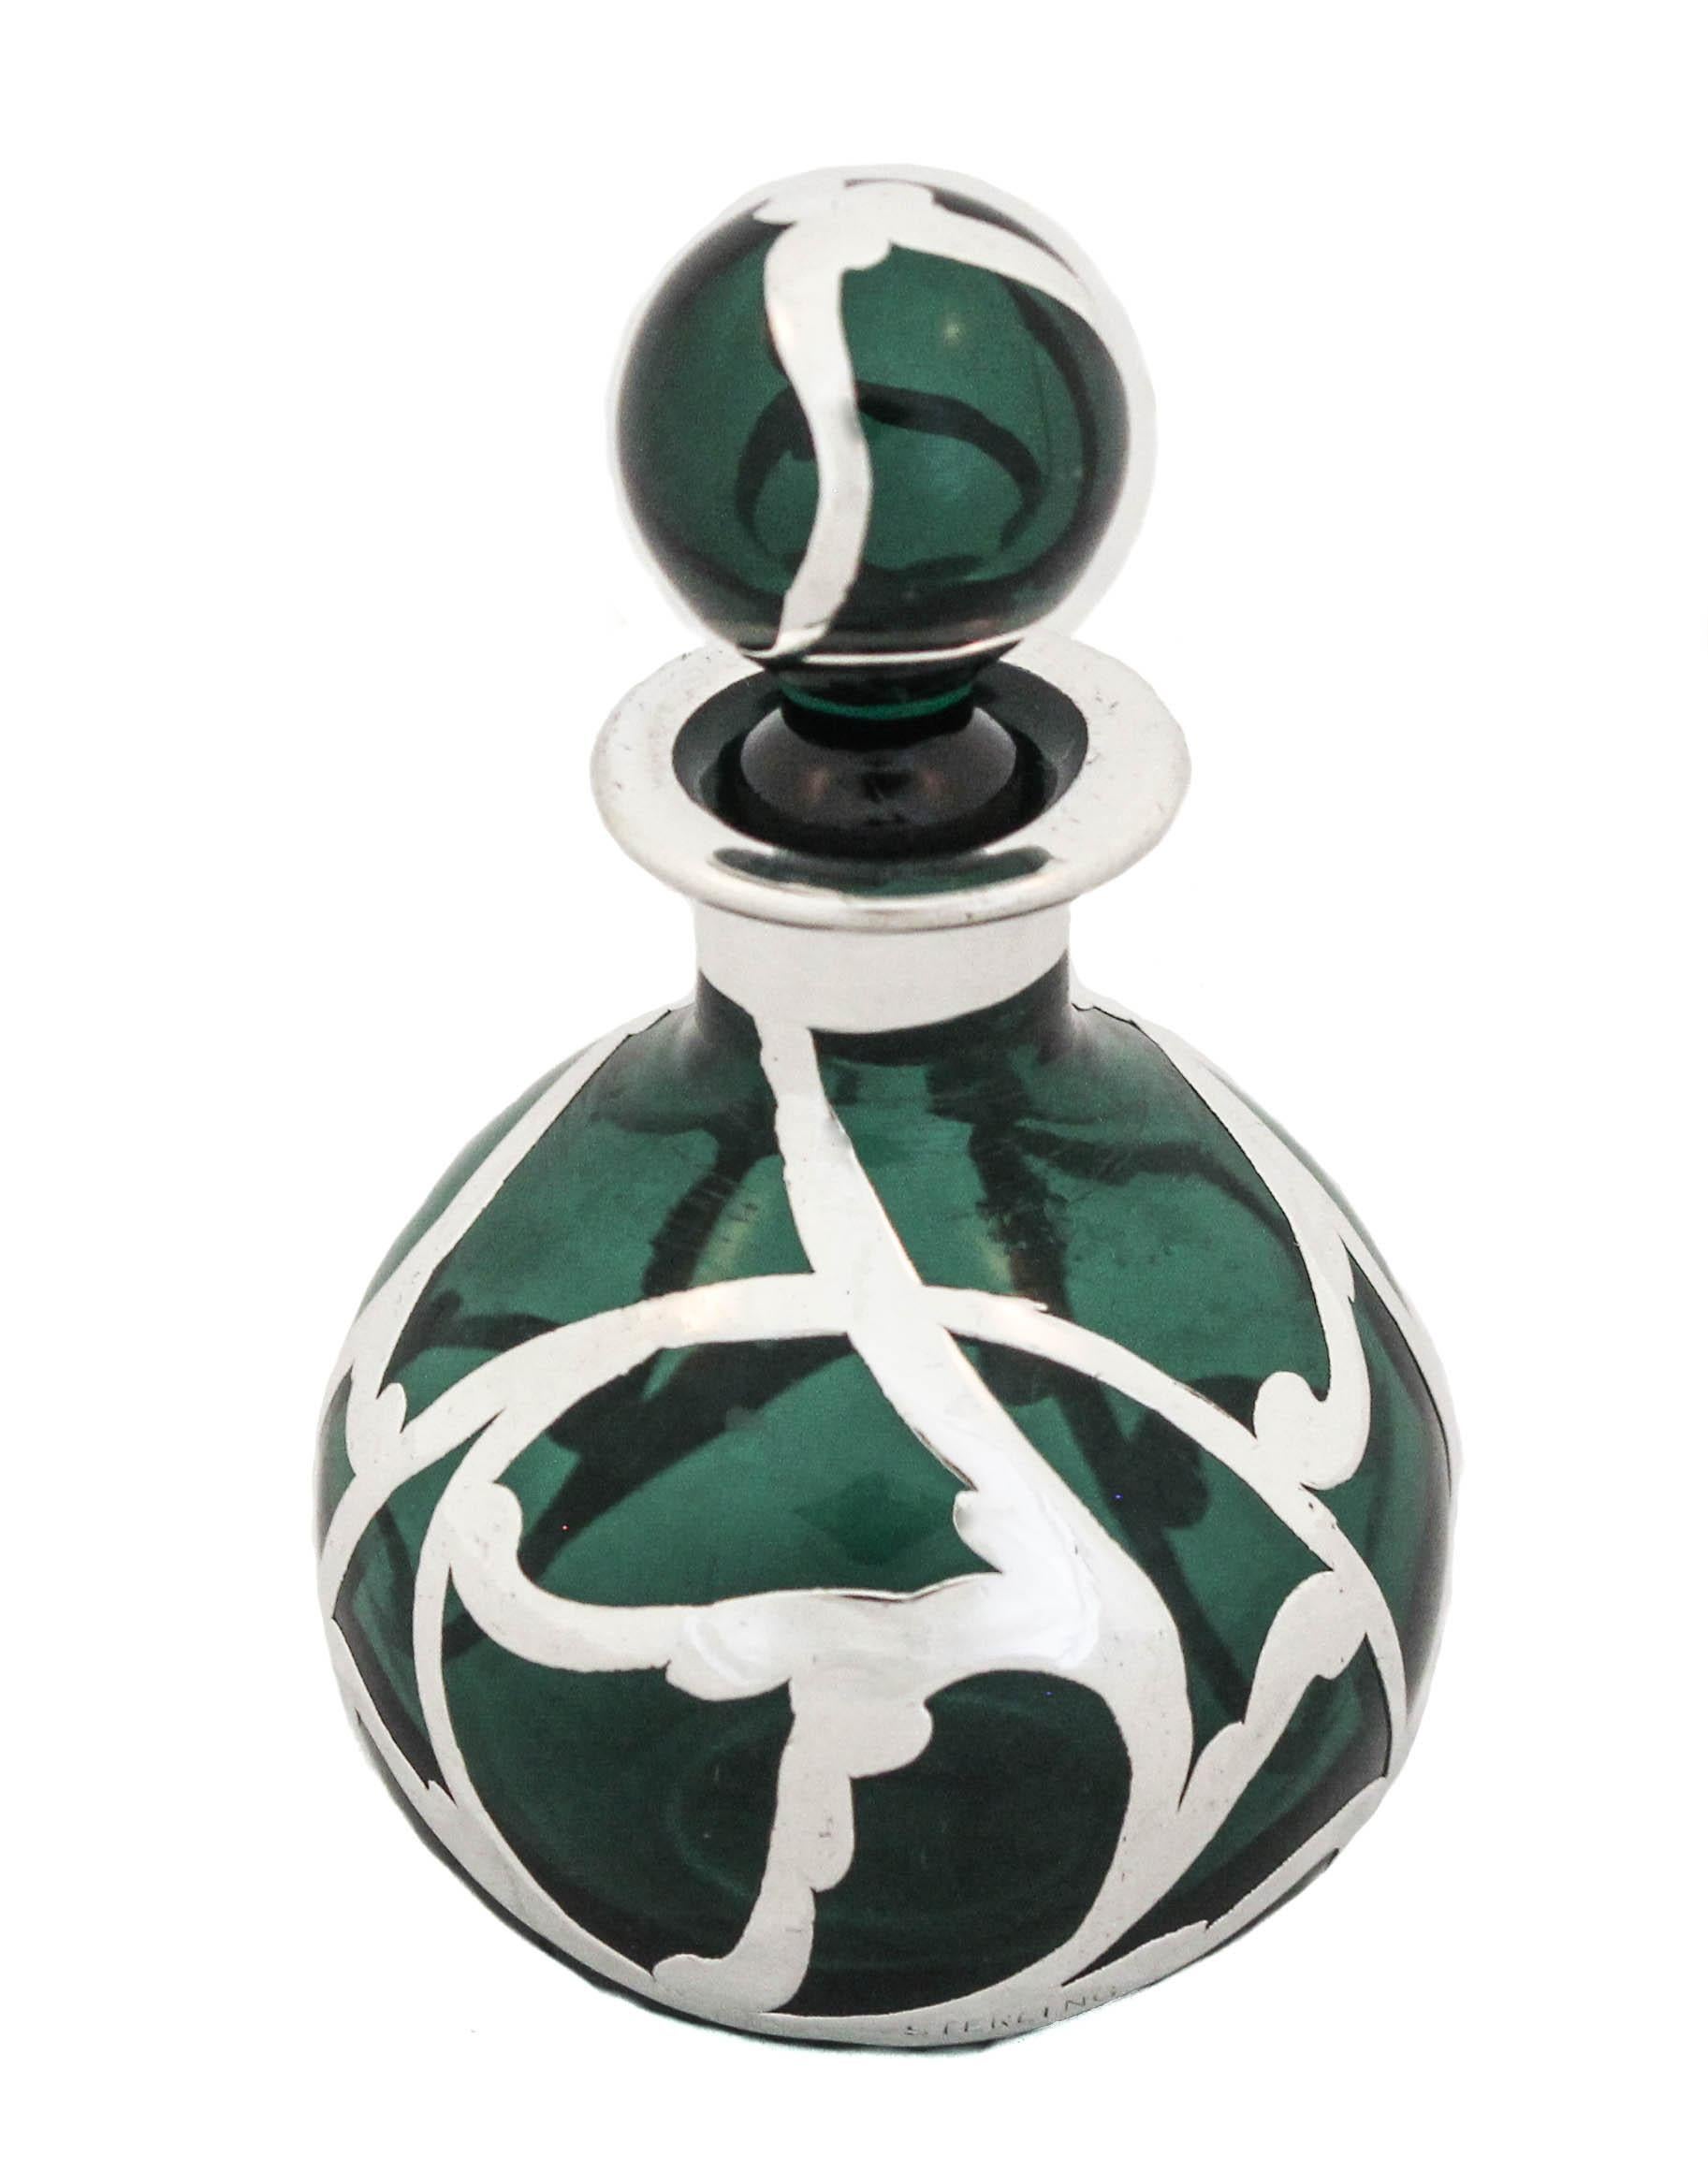 Nous vous proposons un flacon de parfum en argent et cristal de la période Art Nouveau.  Le verre est d'un vert profond et est recouvert d'une couche d'argent.  Le motif en argent est la quintessence de l'Art nouveau avec ses tourbillons organiques